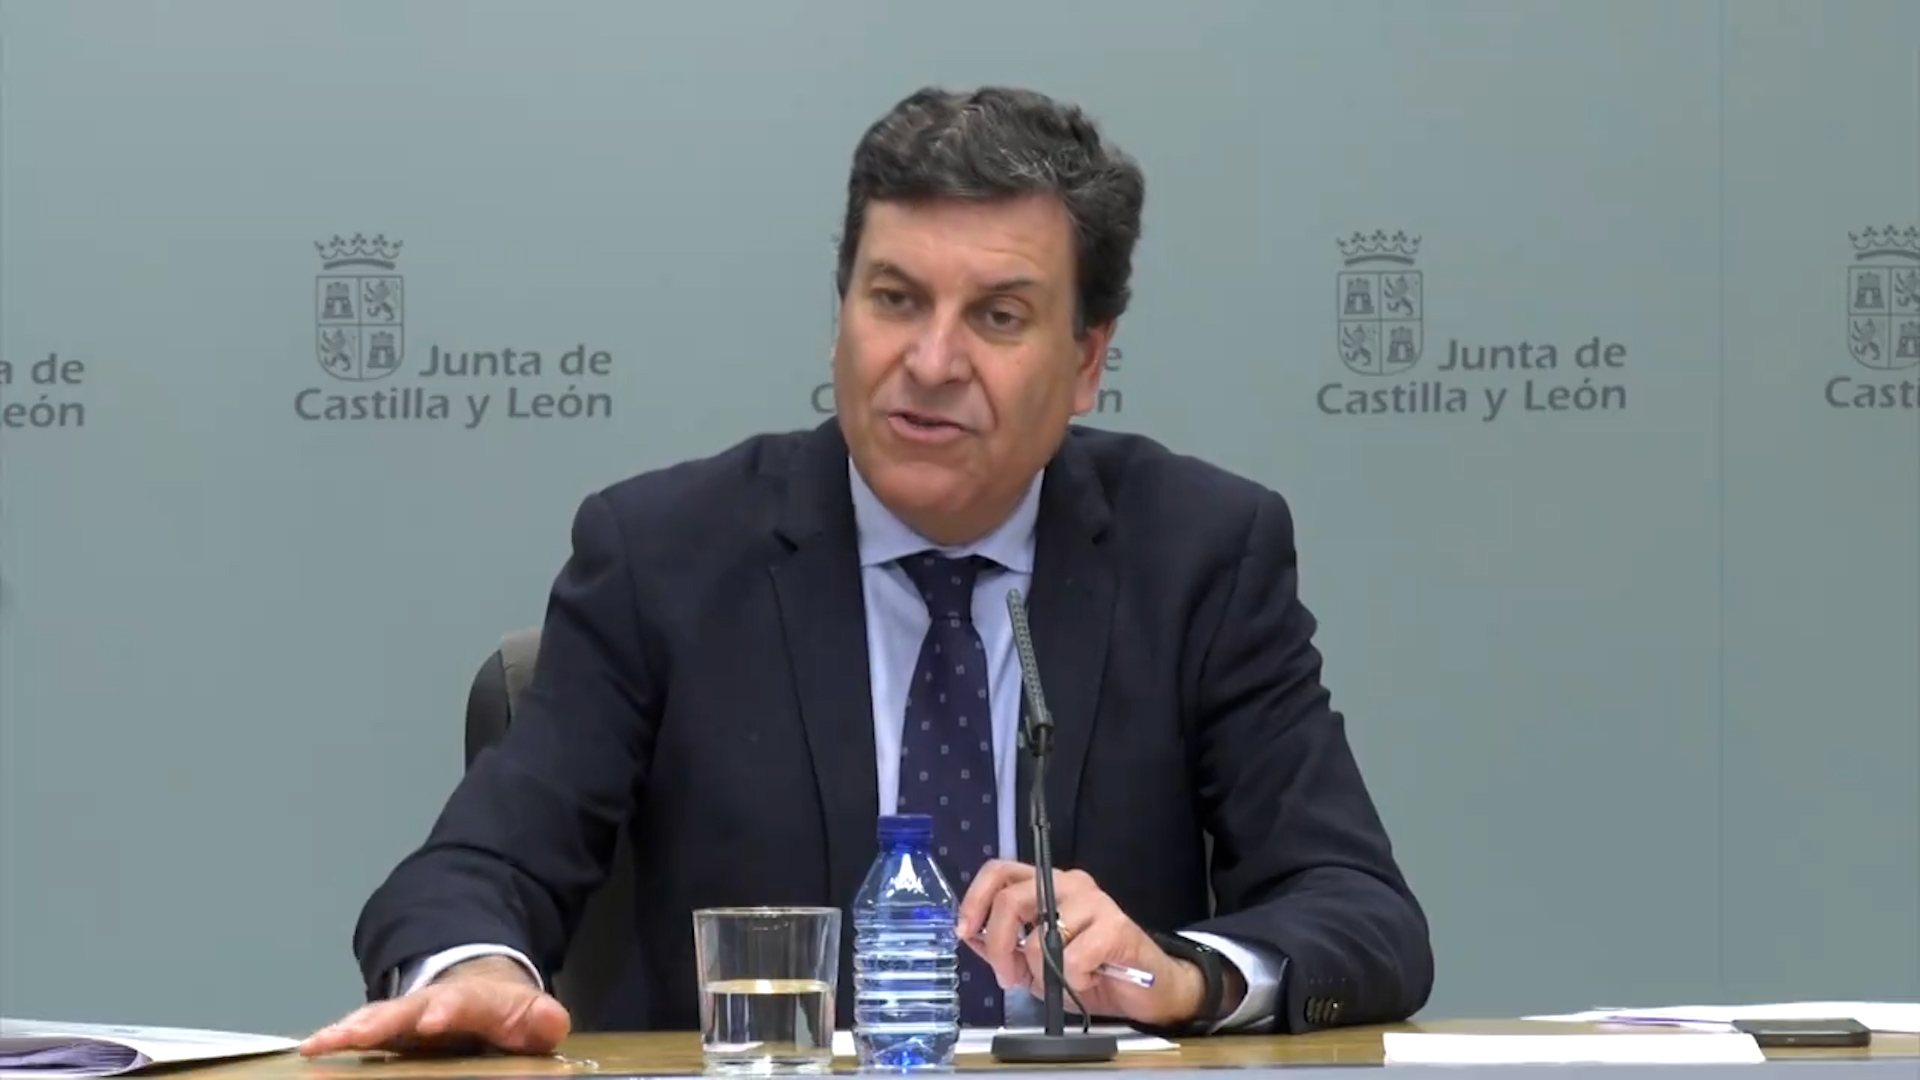 El consejero de Economía y Hacienda de la Junta de Castilla y León, Carlos Fernández Carriedo.